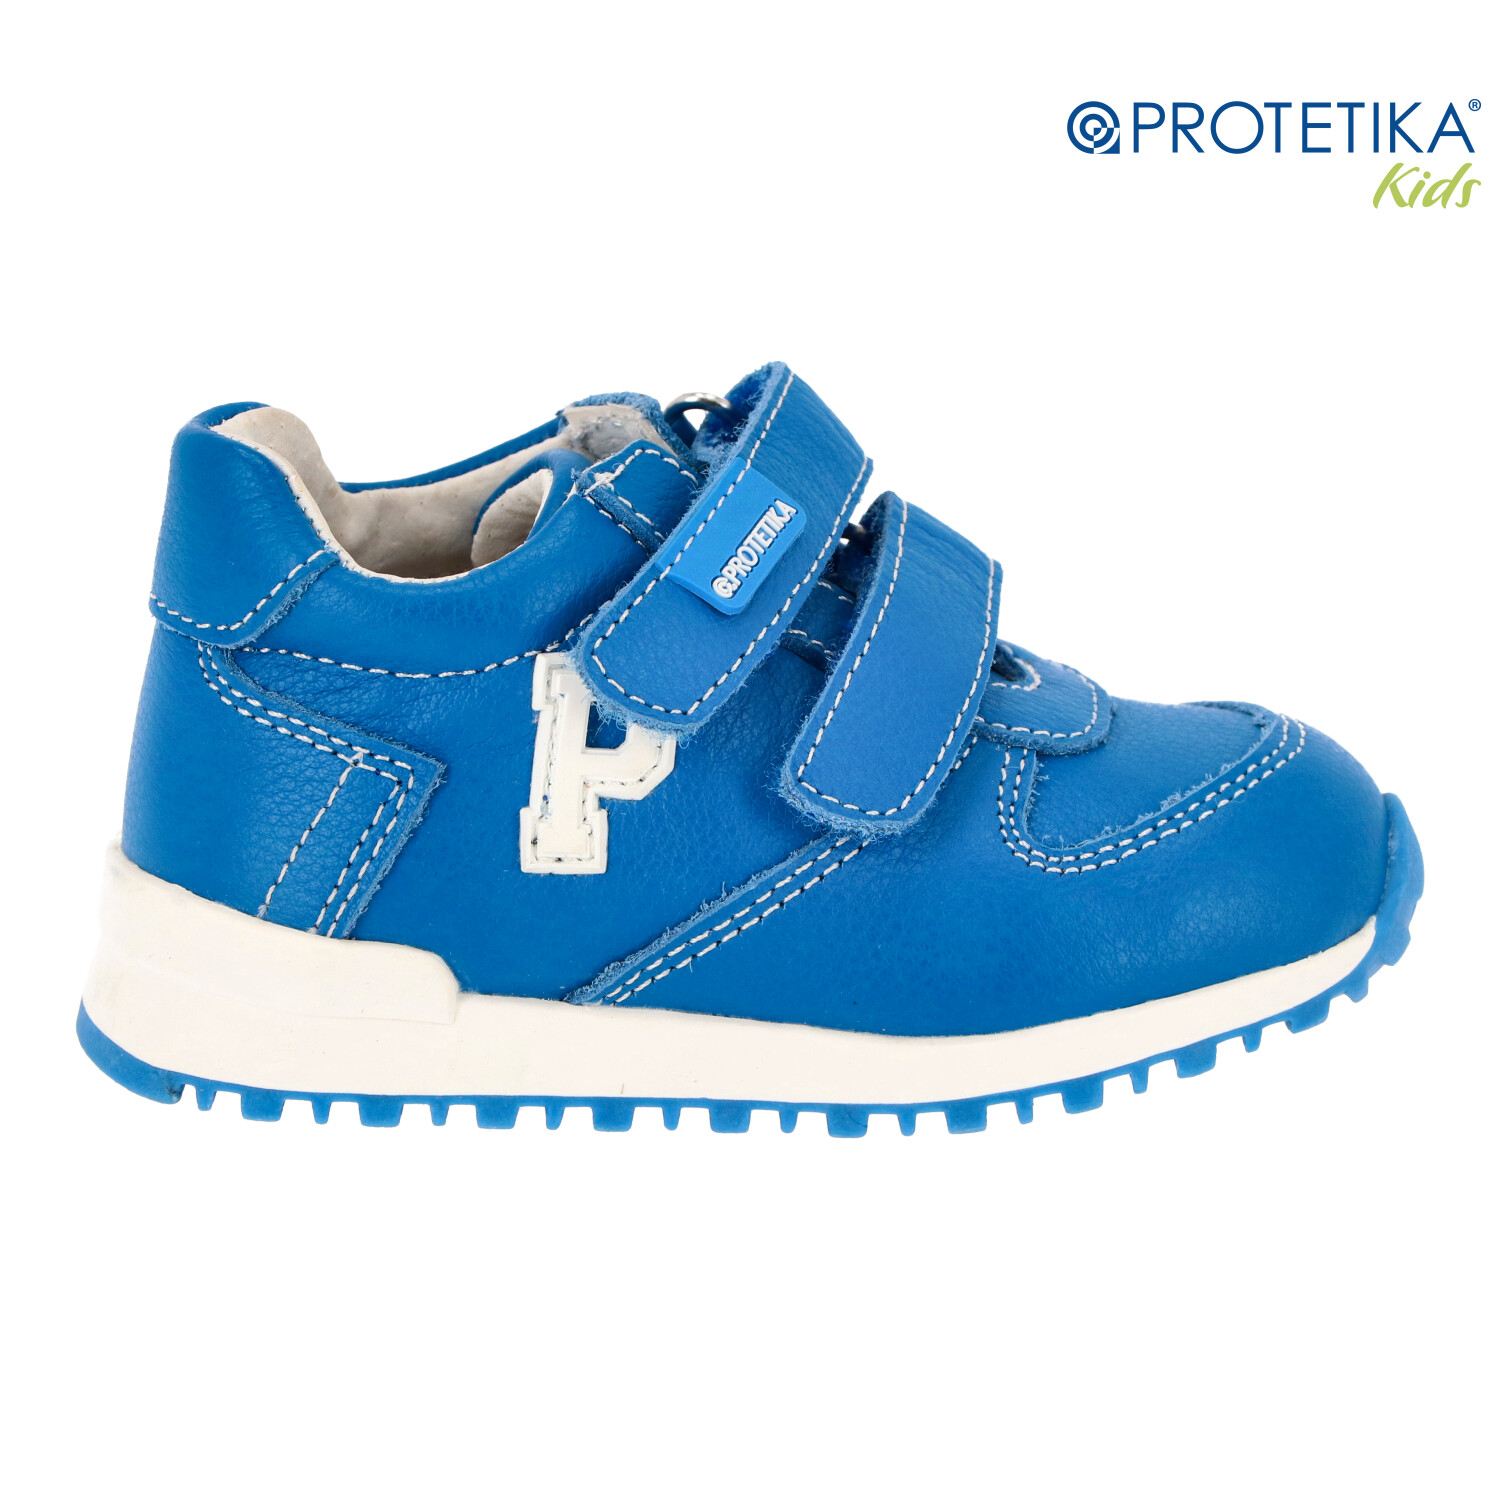 Protetika - topánky DERY blue